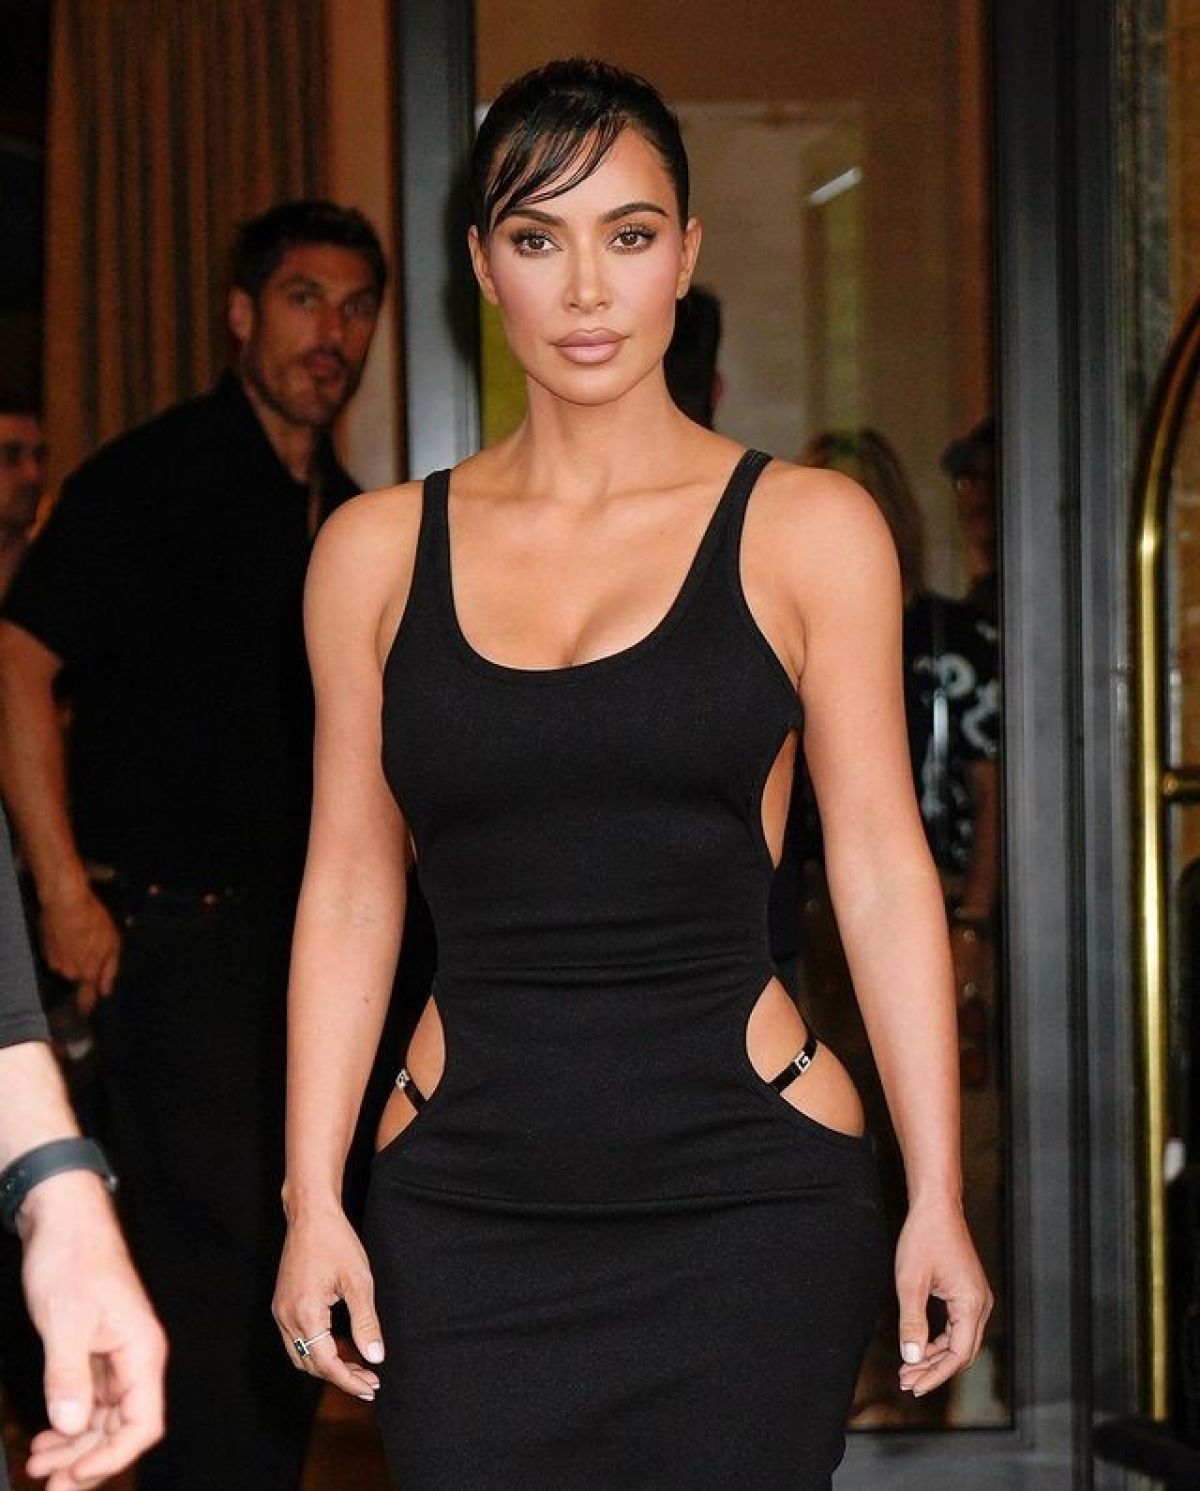 Kim adds boldness in black one piece